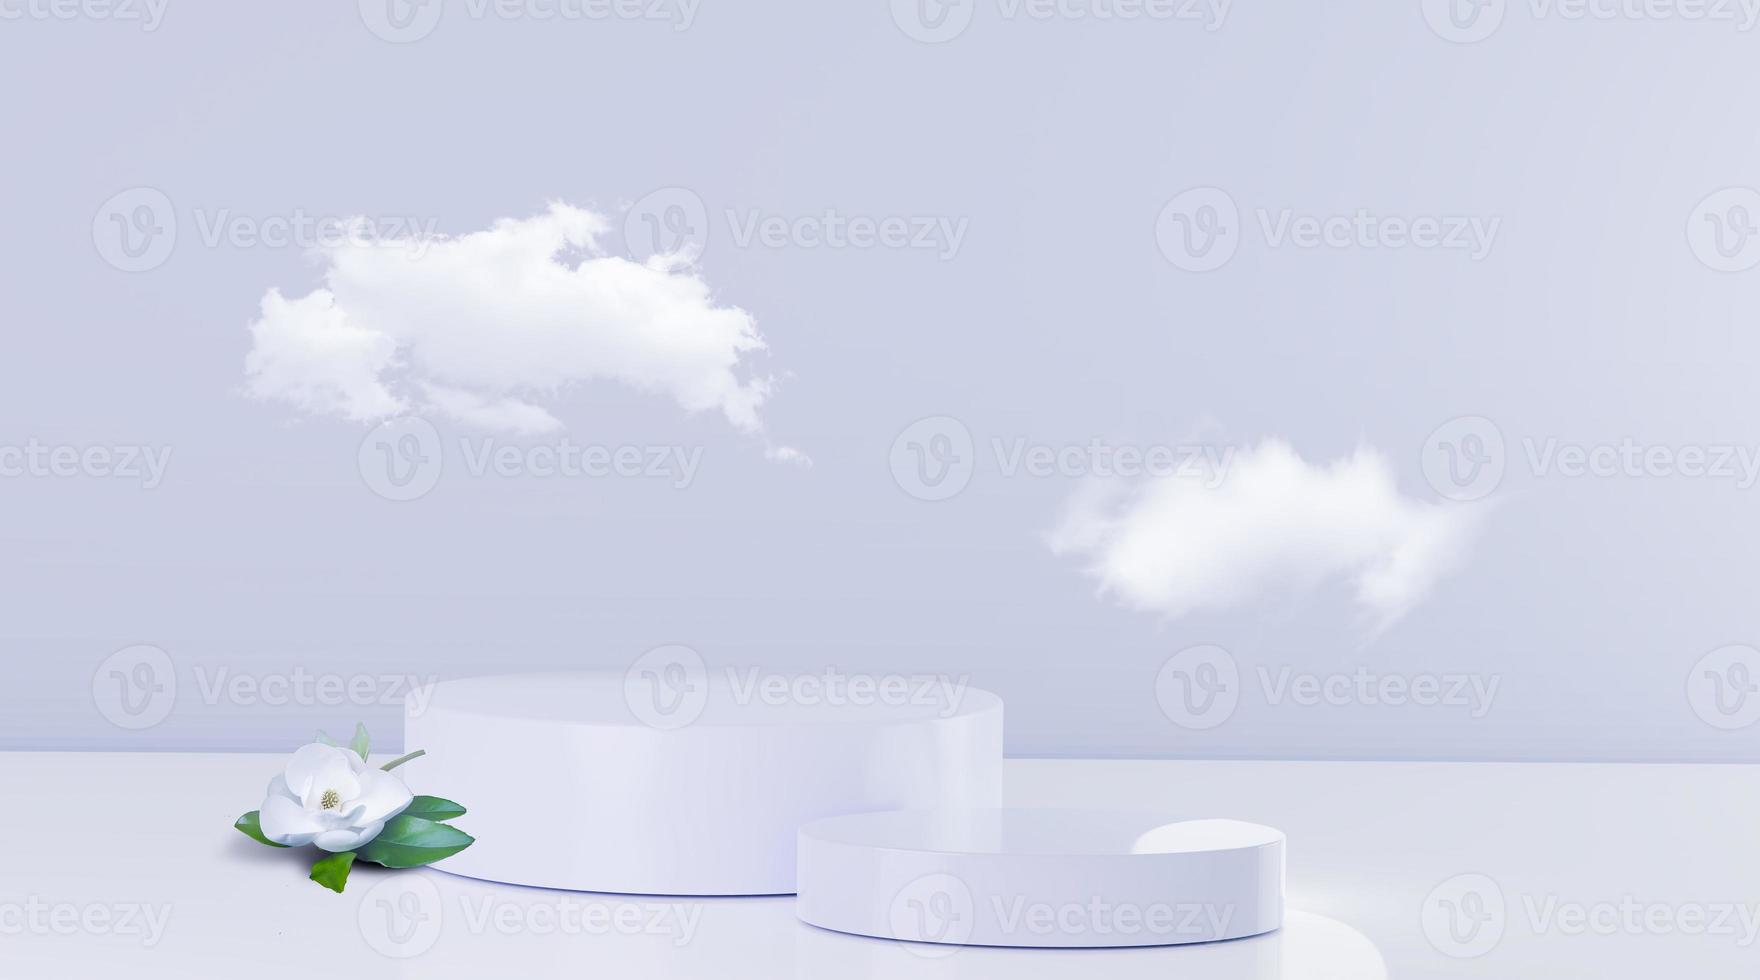 blanc 2 étapes soins de beauté et maquette de podium publicitaire de produits cosmétiques avec fond de couleur douce et nuages blancs et image de rendu 3d fleur réaliste. photo